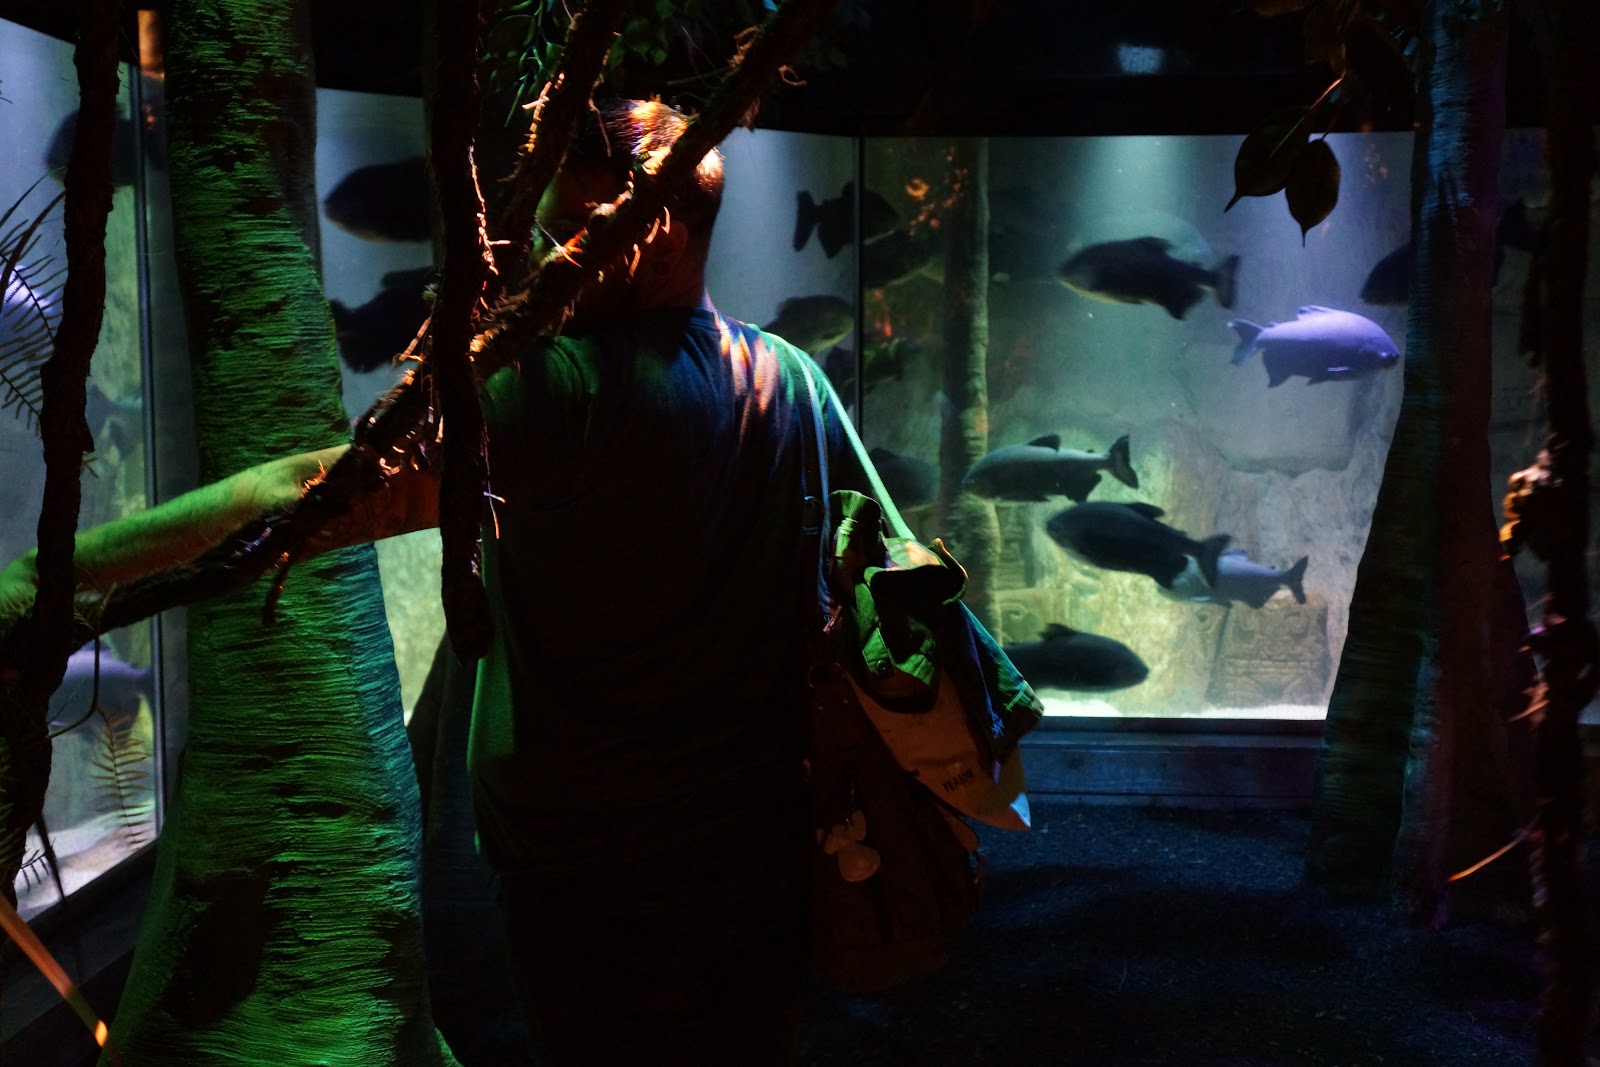 piranha at london aquarium